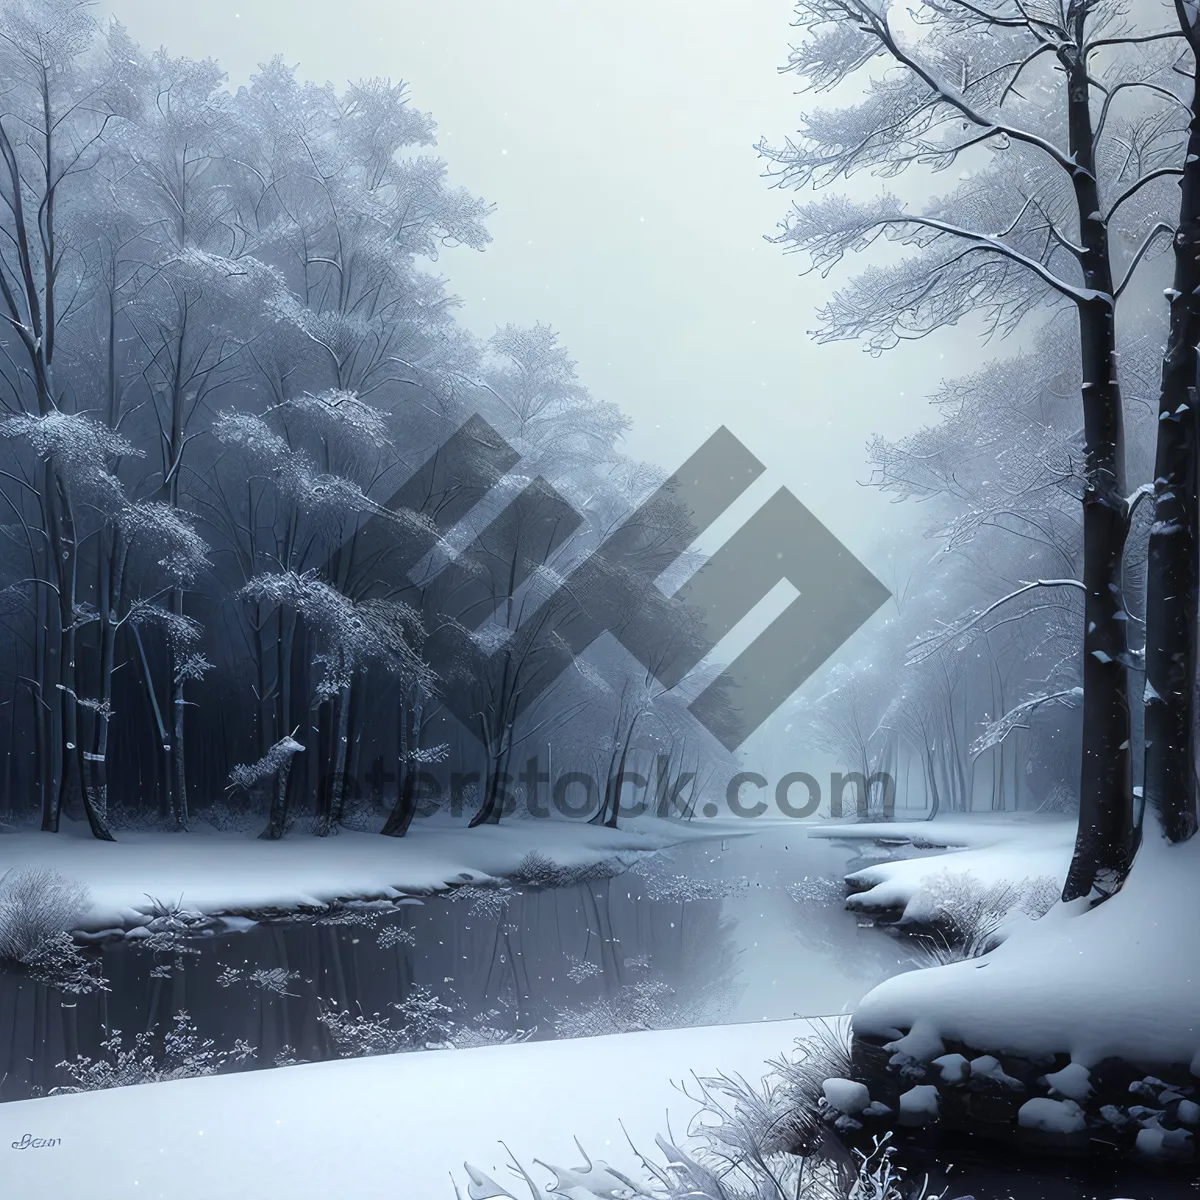 Picture of Winter Wonderland: Serene Snowy Landscape in Frozen Forest